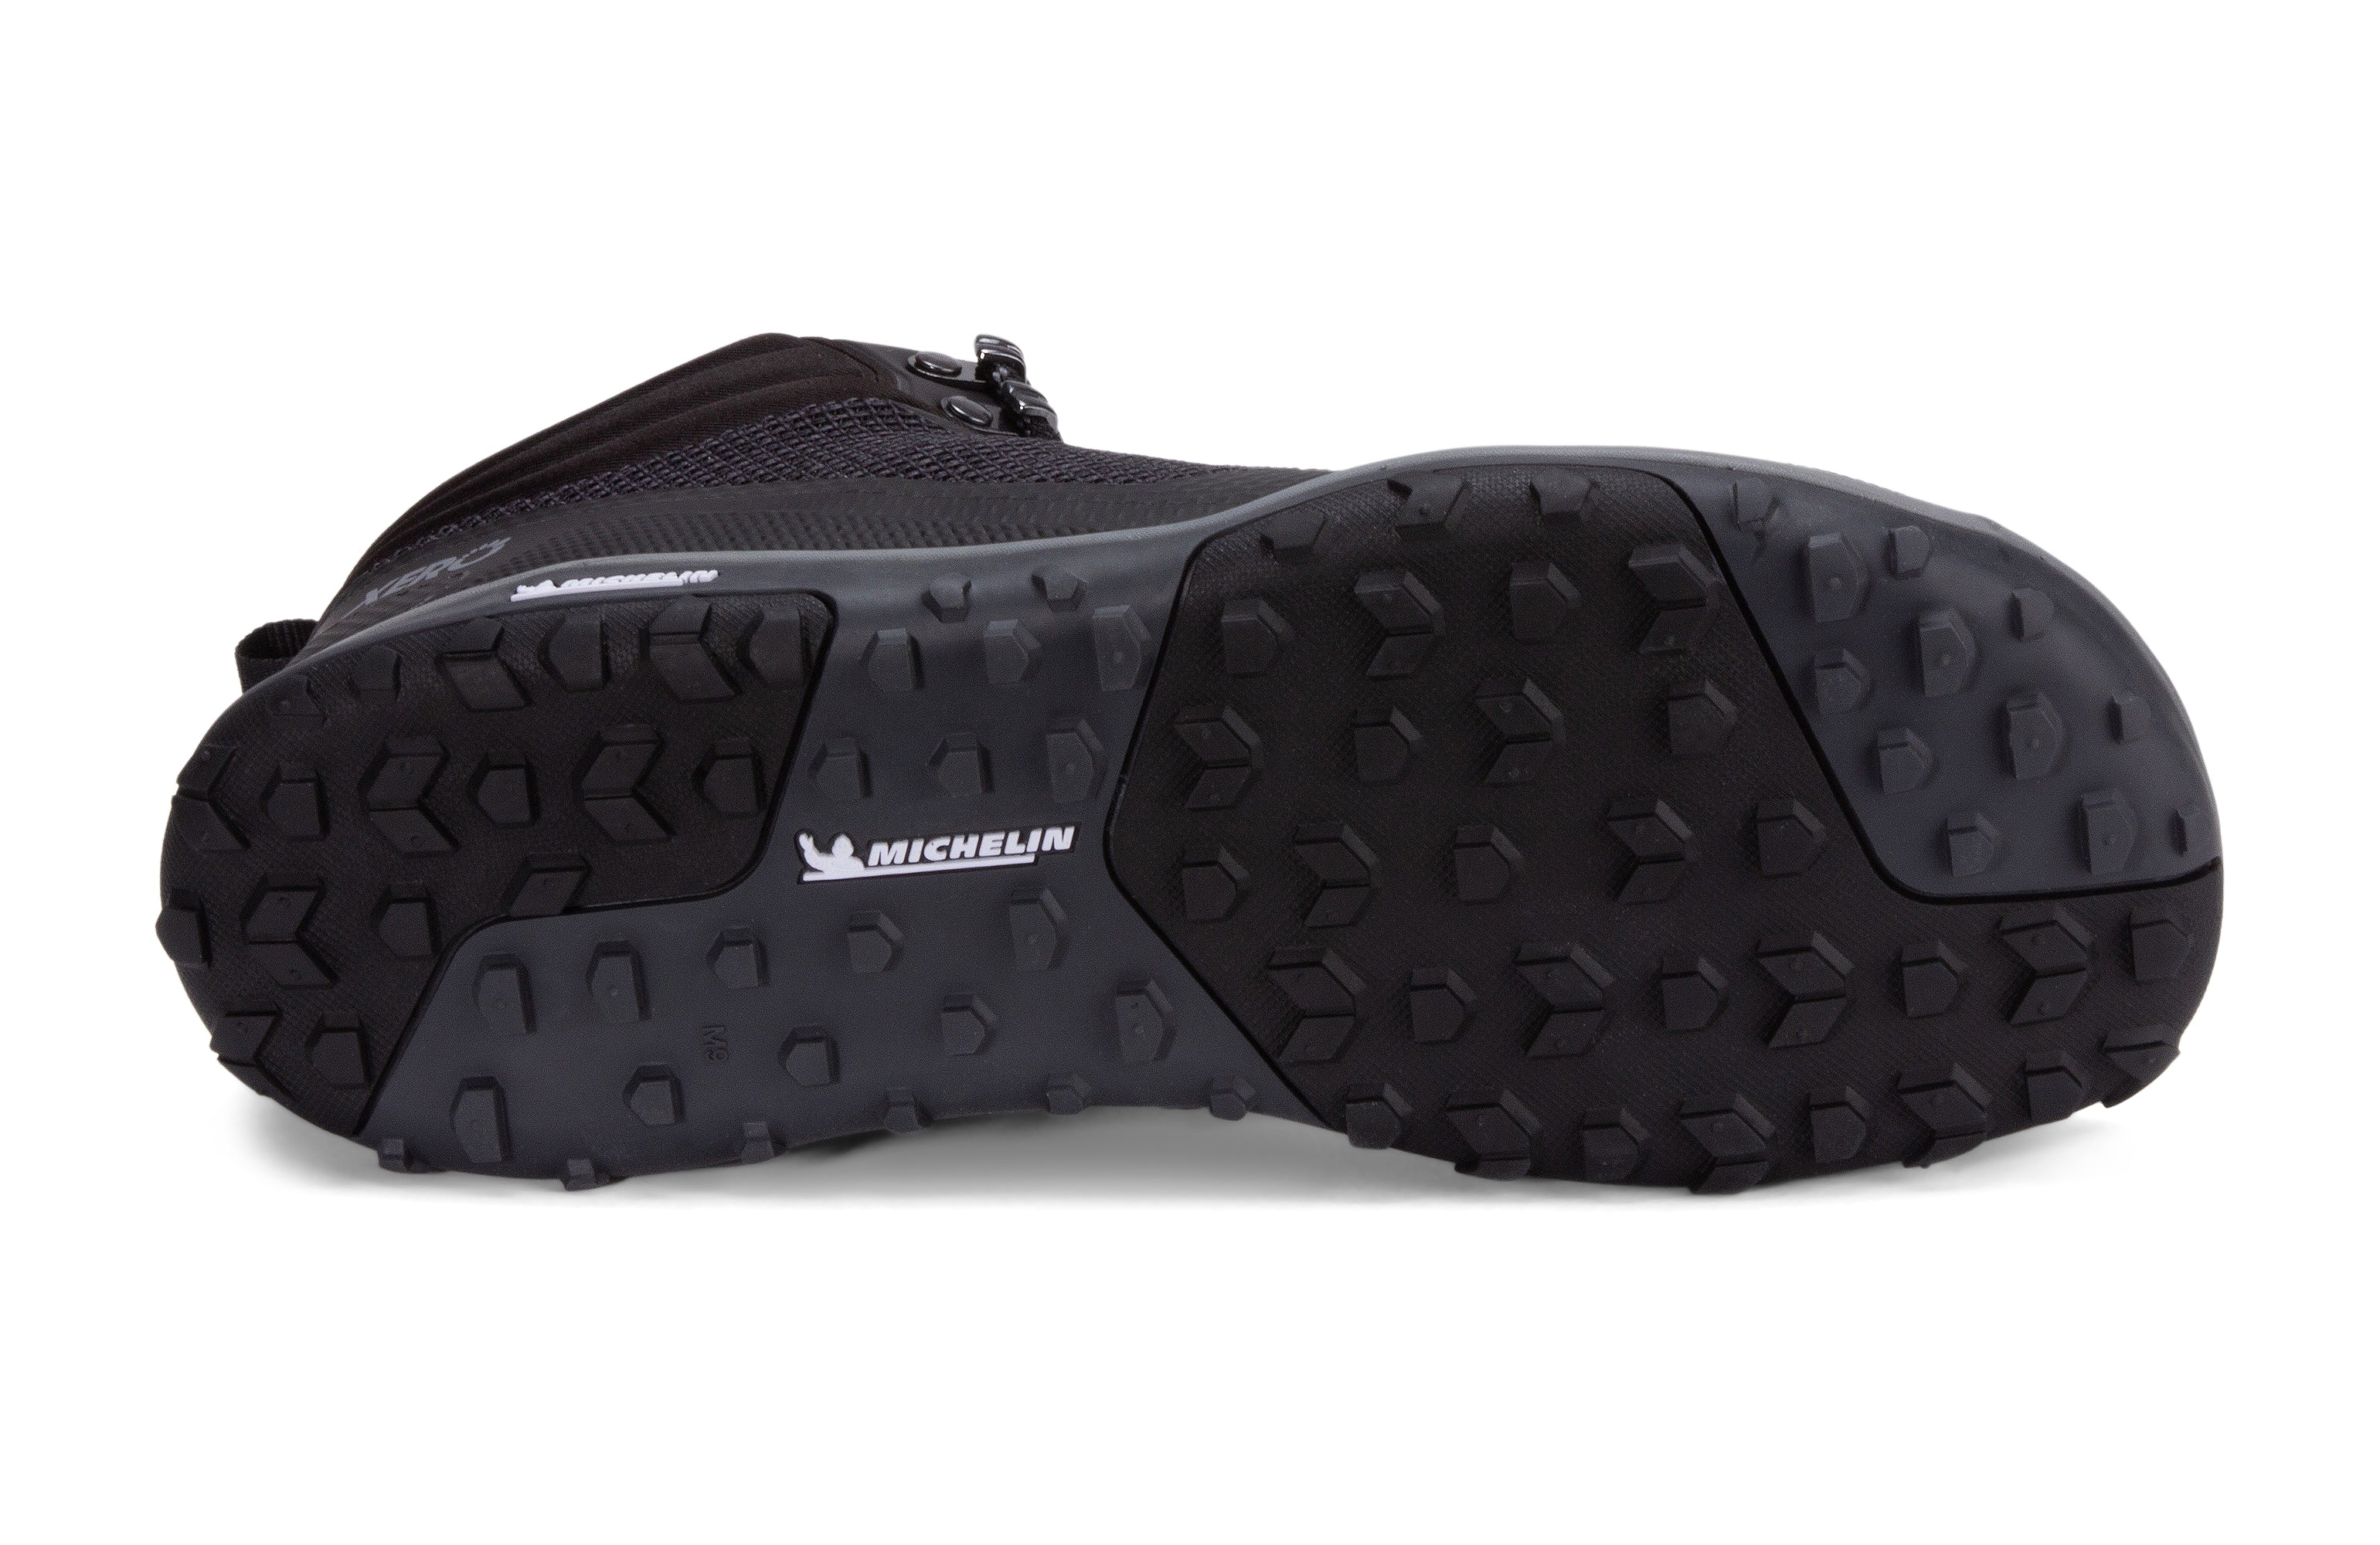 Xero Shoes Scrambler Mid Mens barfods lette vandrestøvler til mænd i farven black, saal